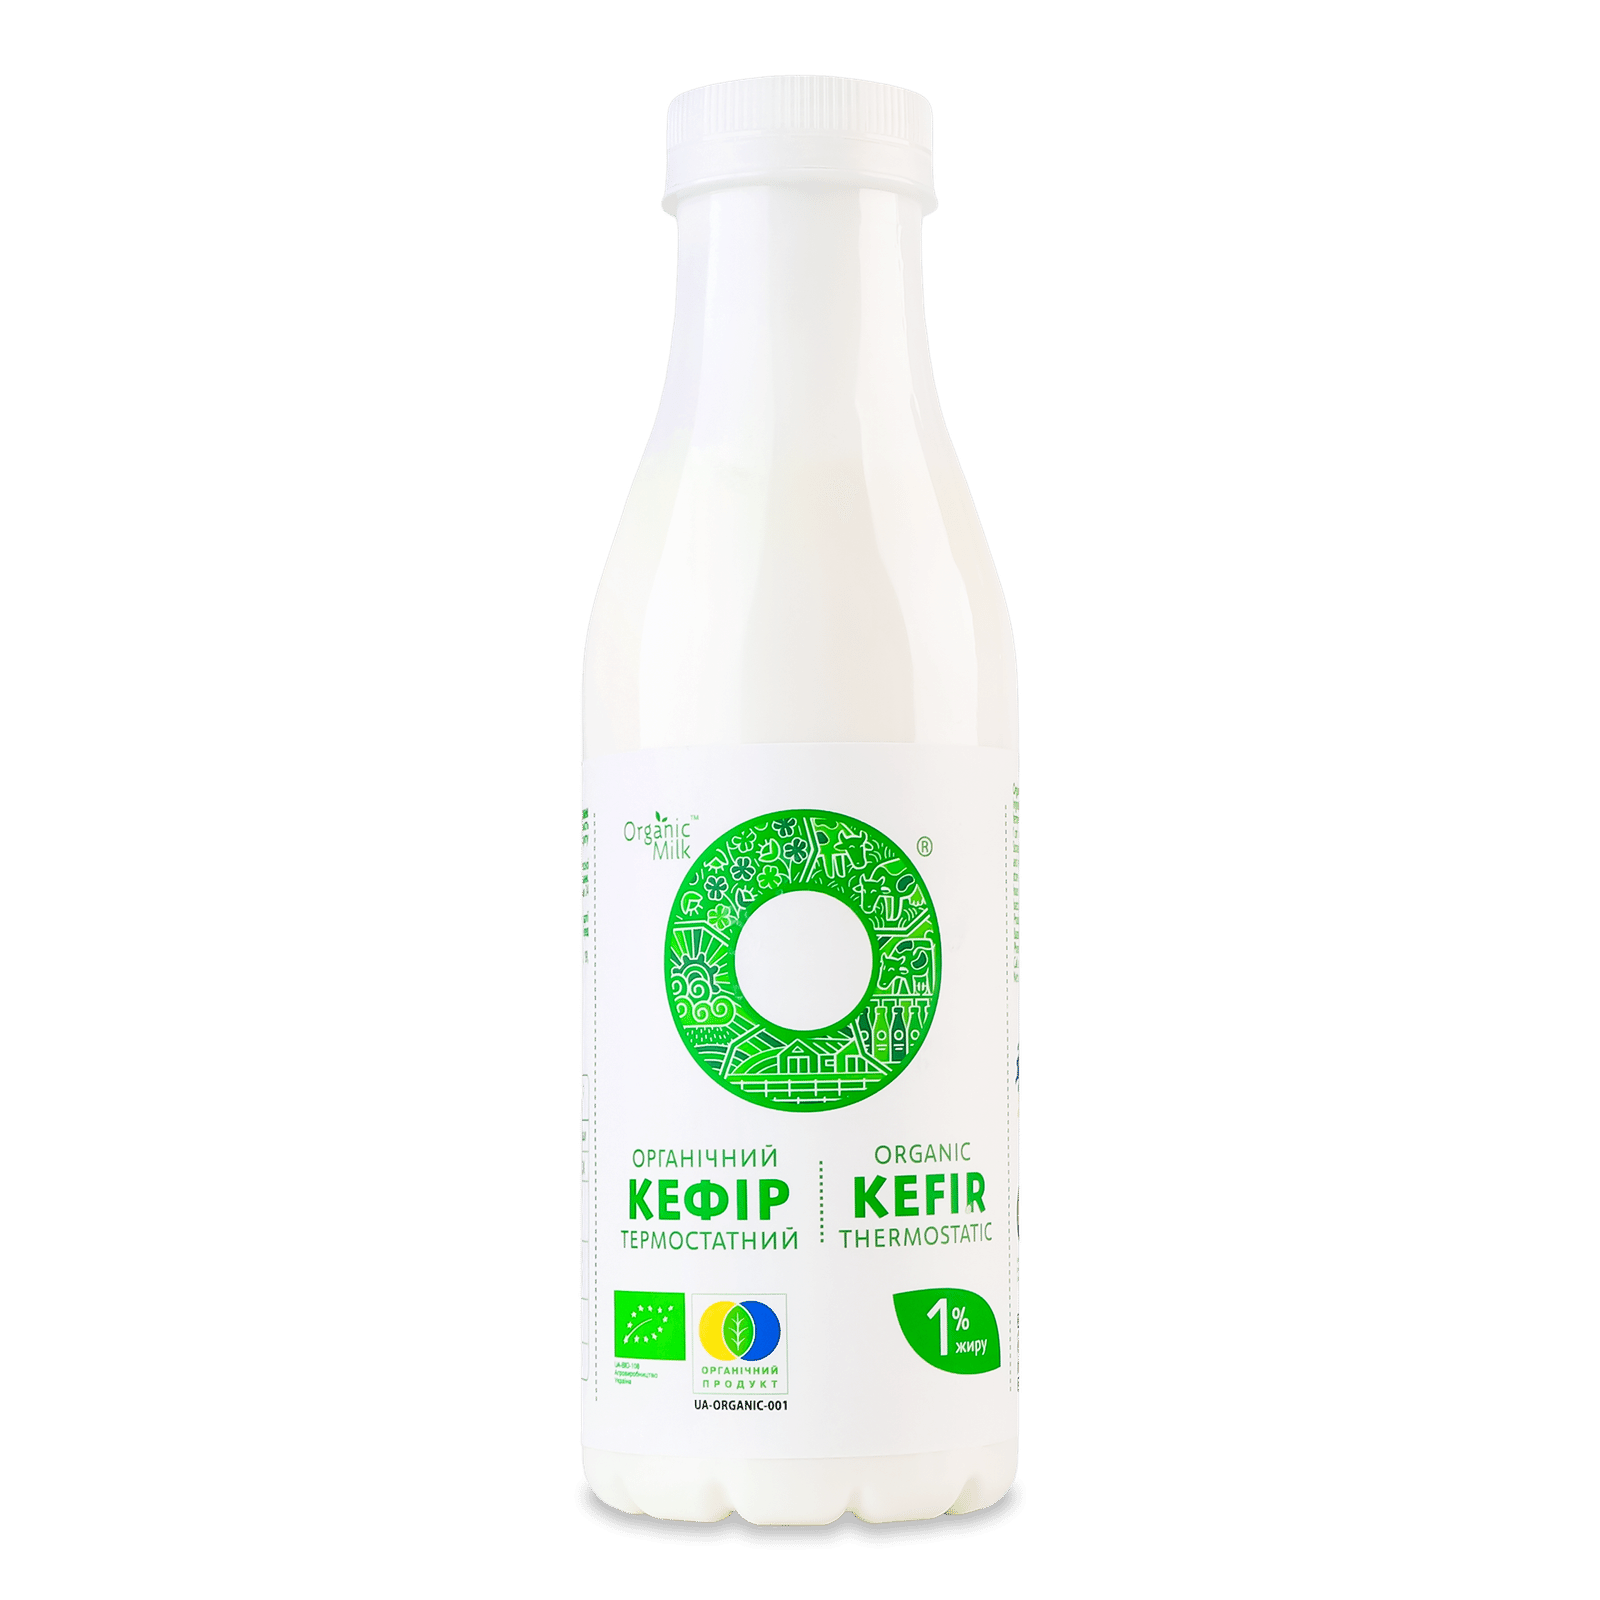 Кефір Organic Milk термостатний органічний 1% пл - 1